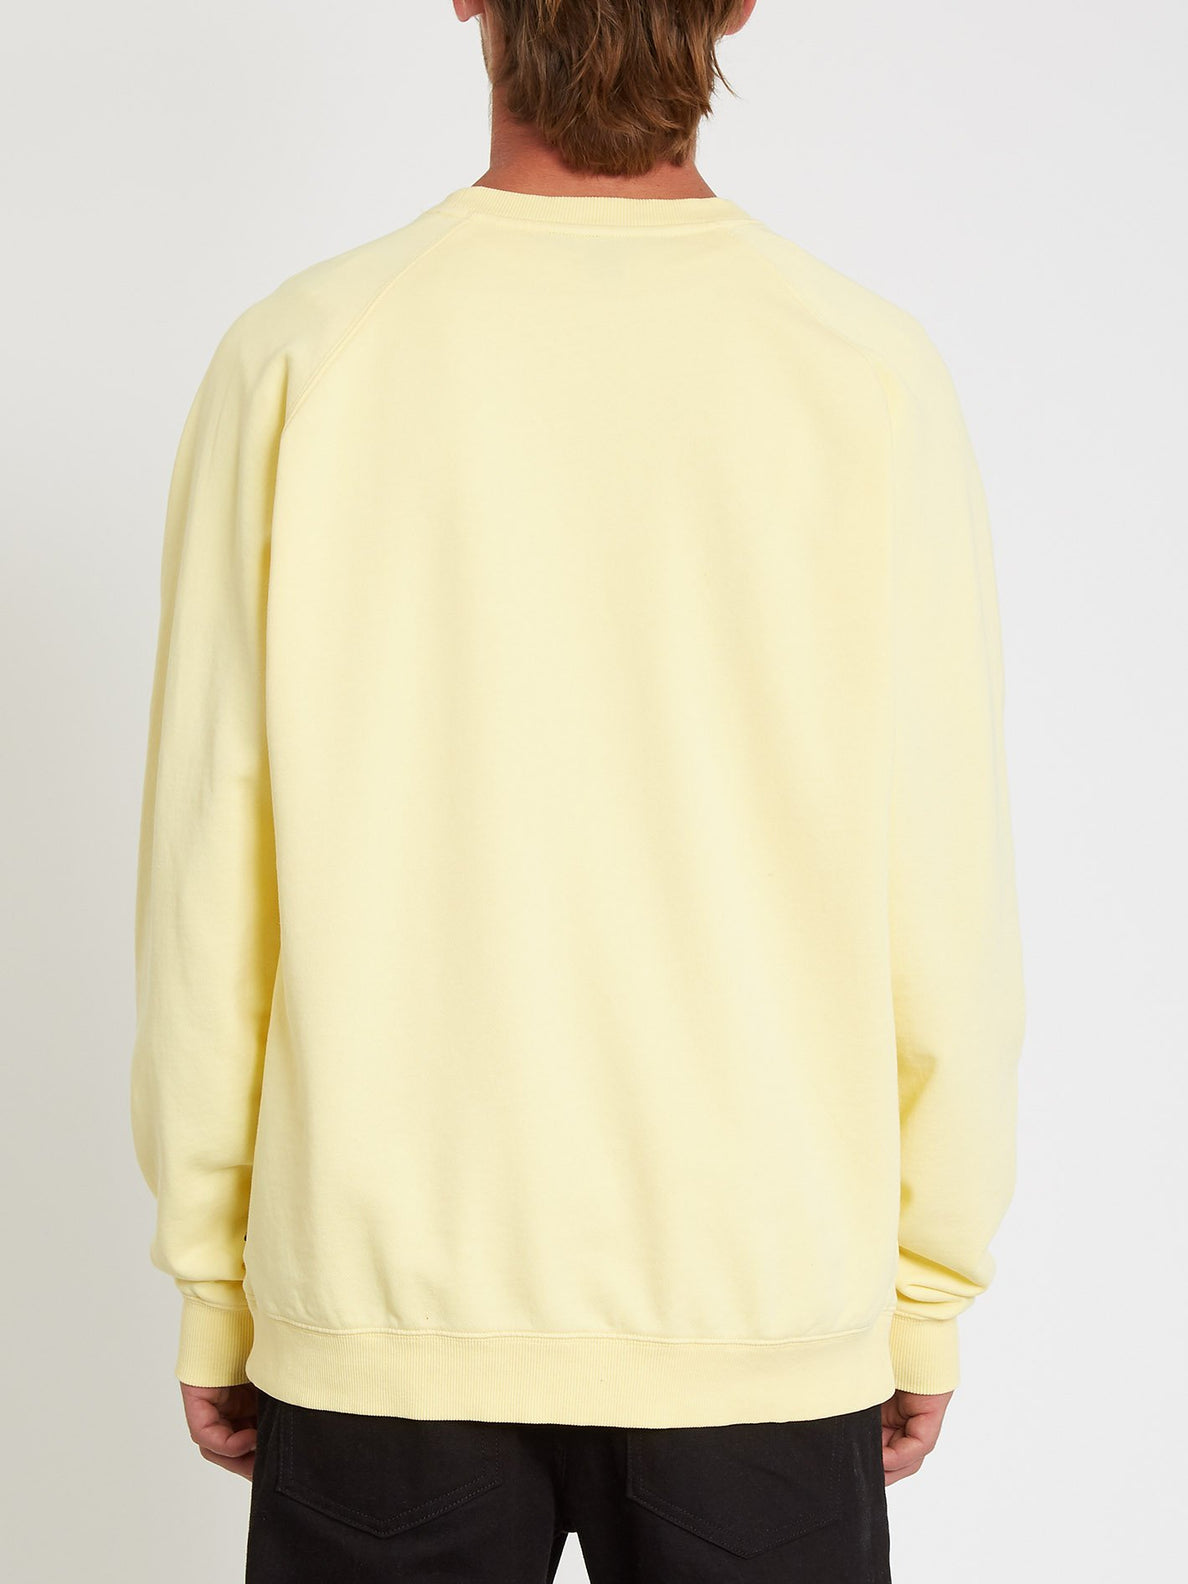 Freeleven Sweatshirt - Dawn Yellow (A4612101_DNY) [B]